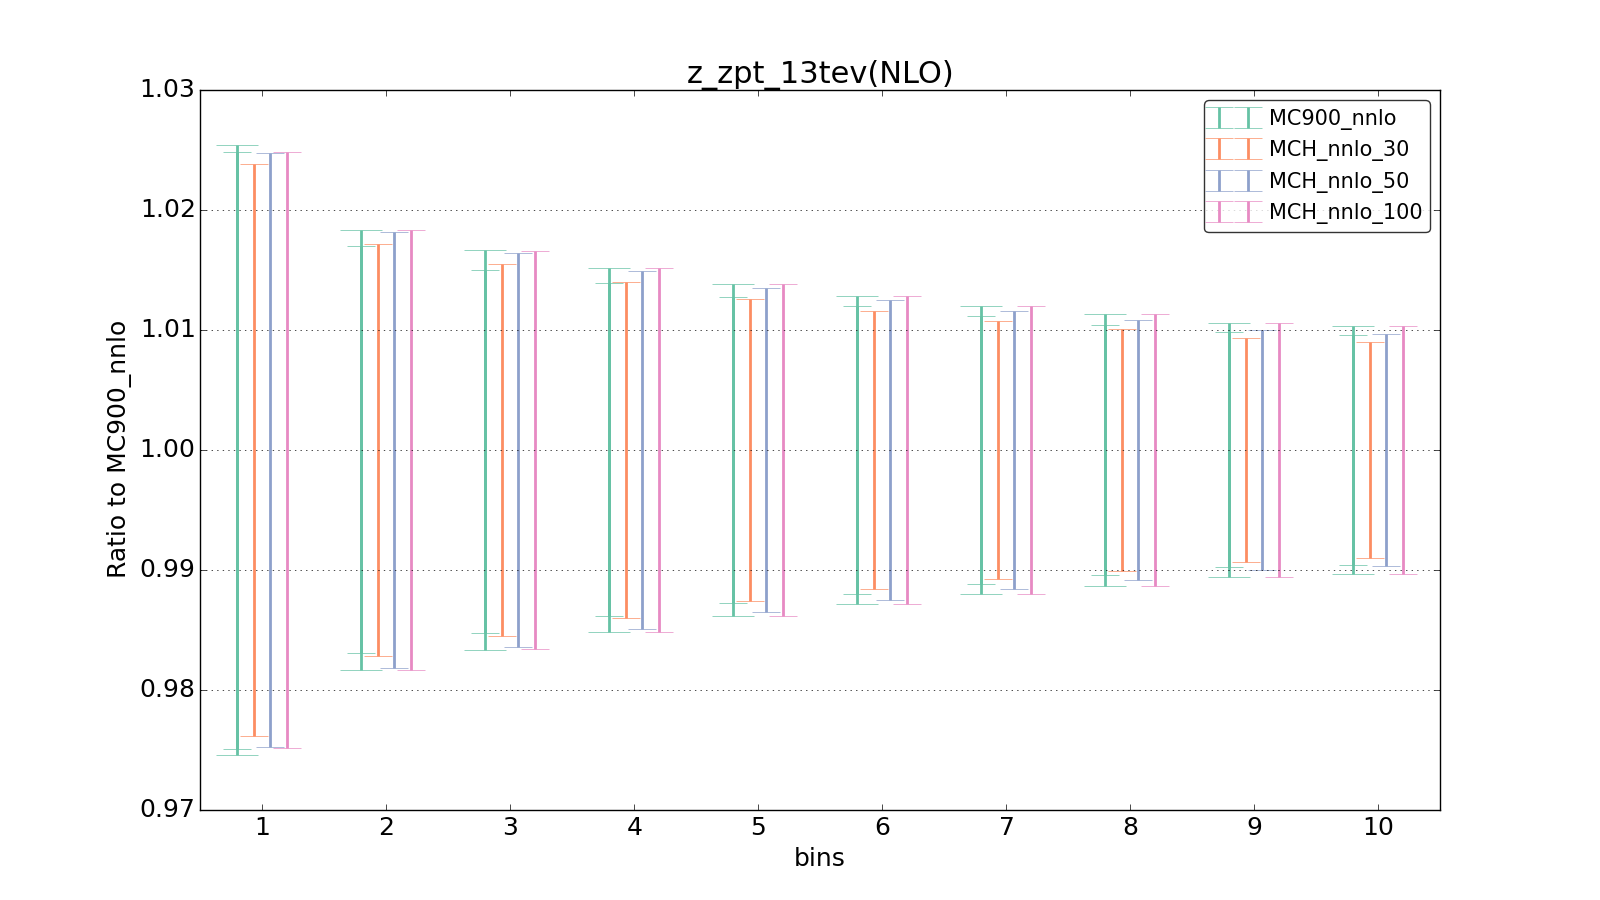 figure plots/pheno_new/NNLO/ciplot_z_zpt_13tev(NLO).png